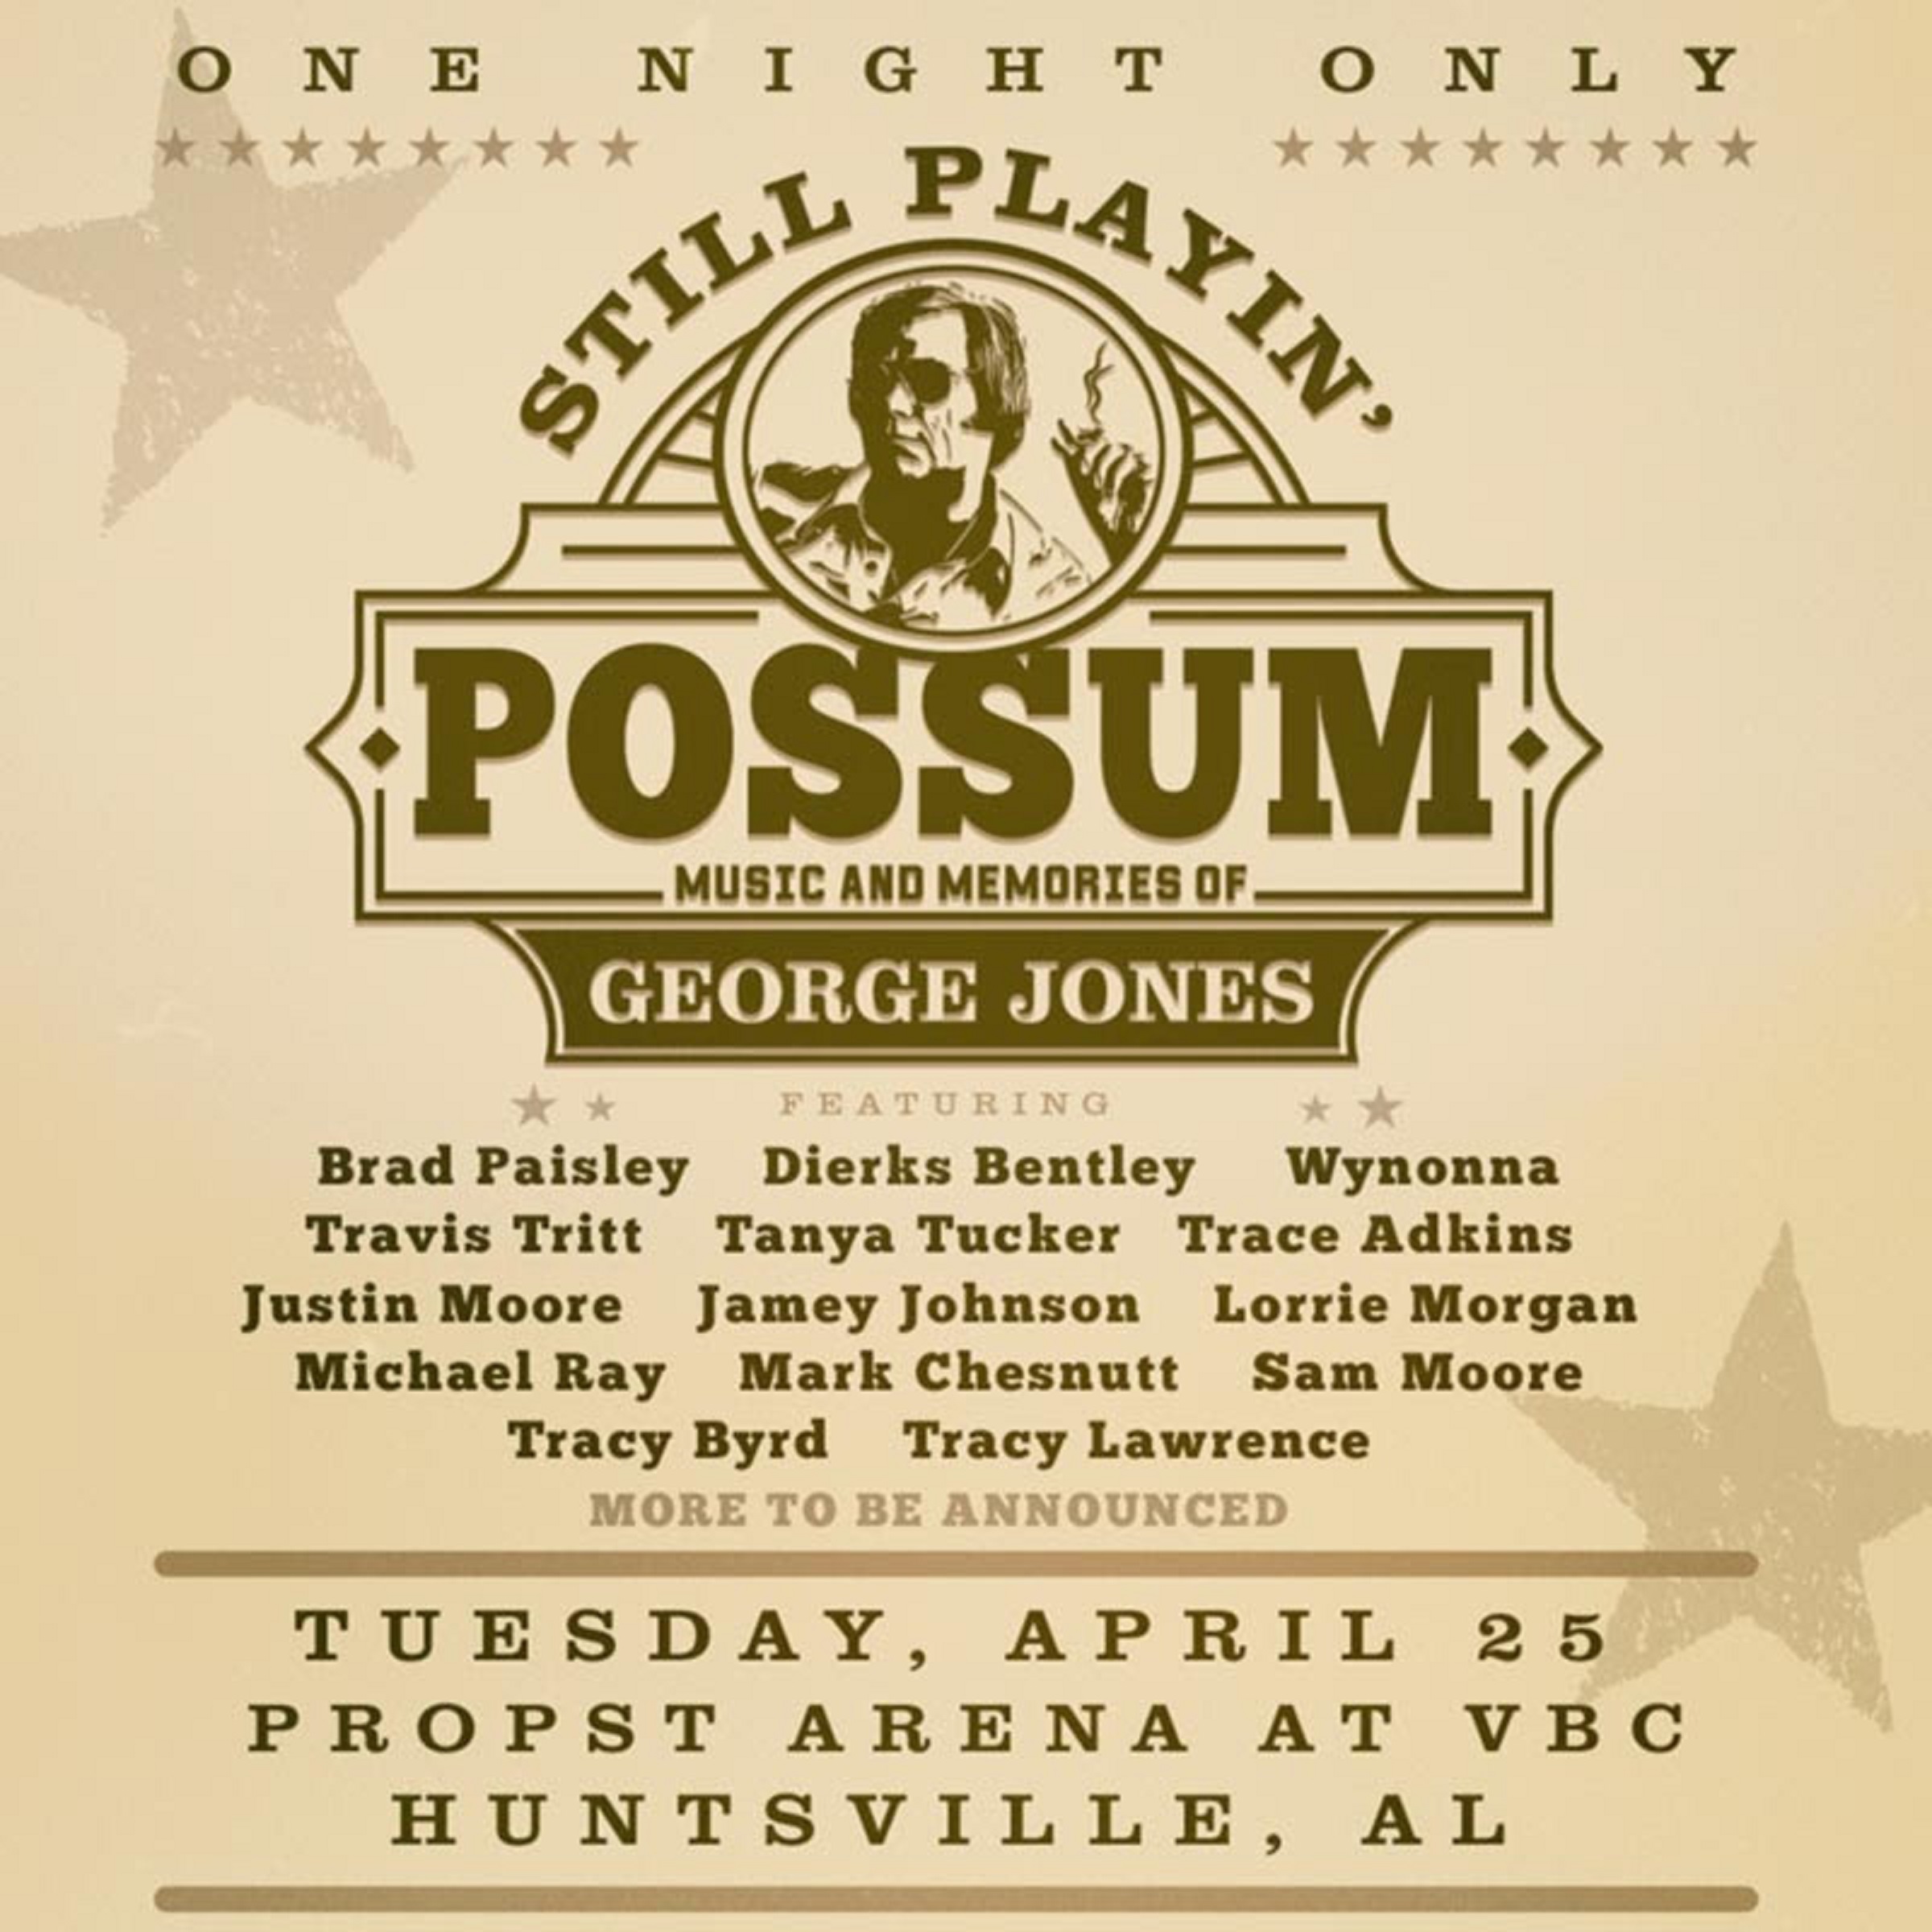 STILL PLAYIN' POSSUM: MUSIC & MEMORIES OF GEORGE JONES SELLS OUT THE VON BRAUN CENTER IN HUNTSVILLE, ALABAMA